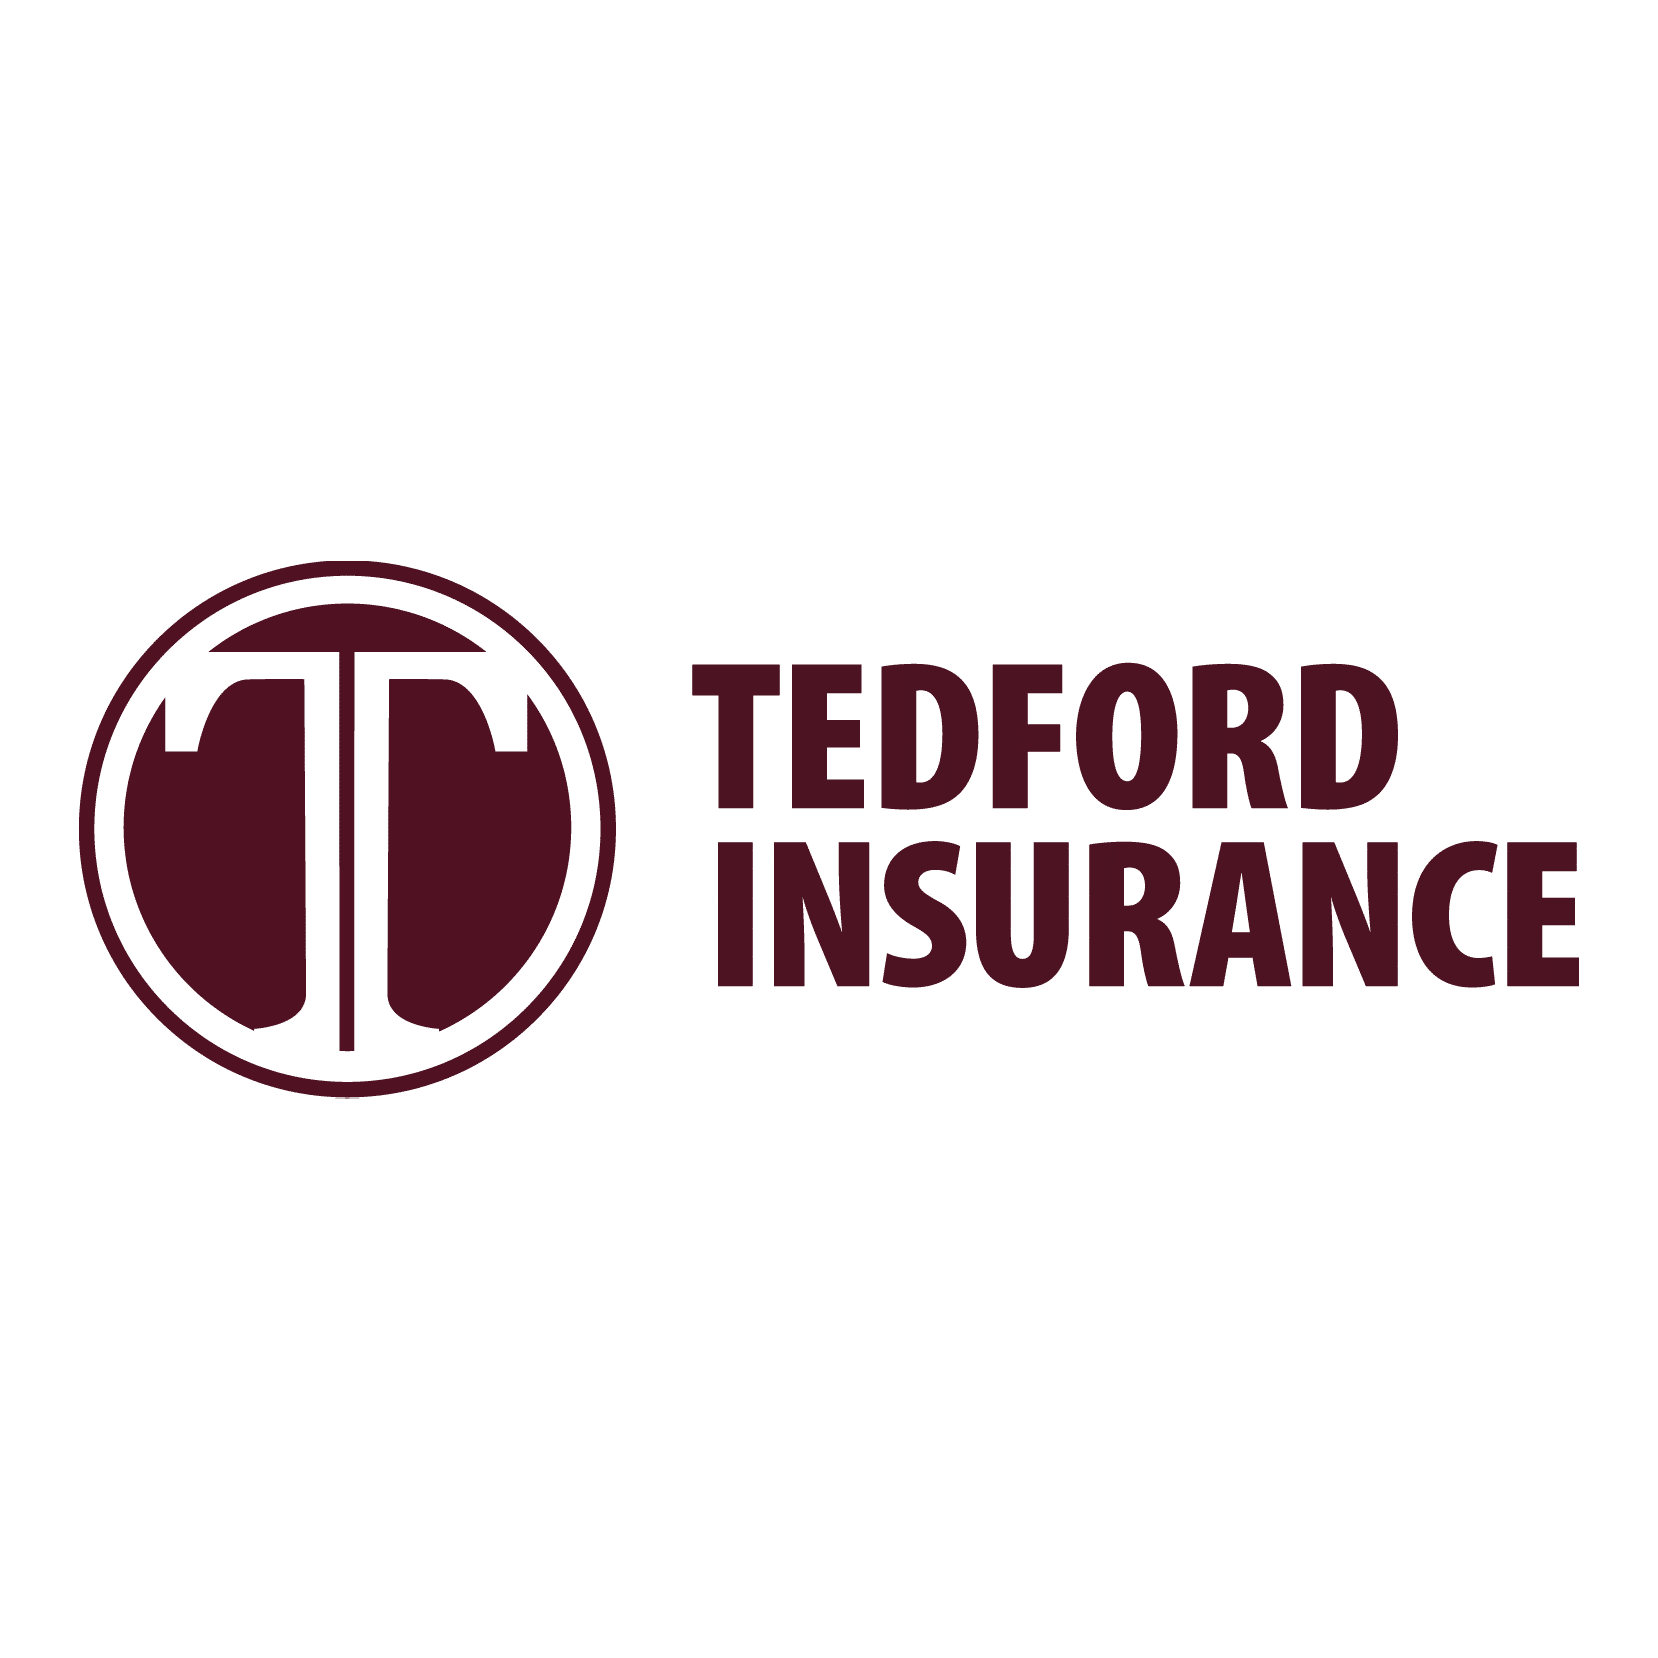 Mark Tedford Insurance